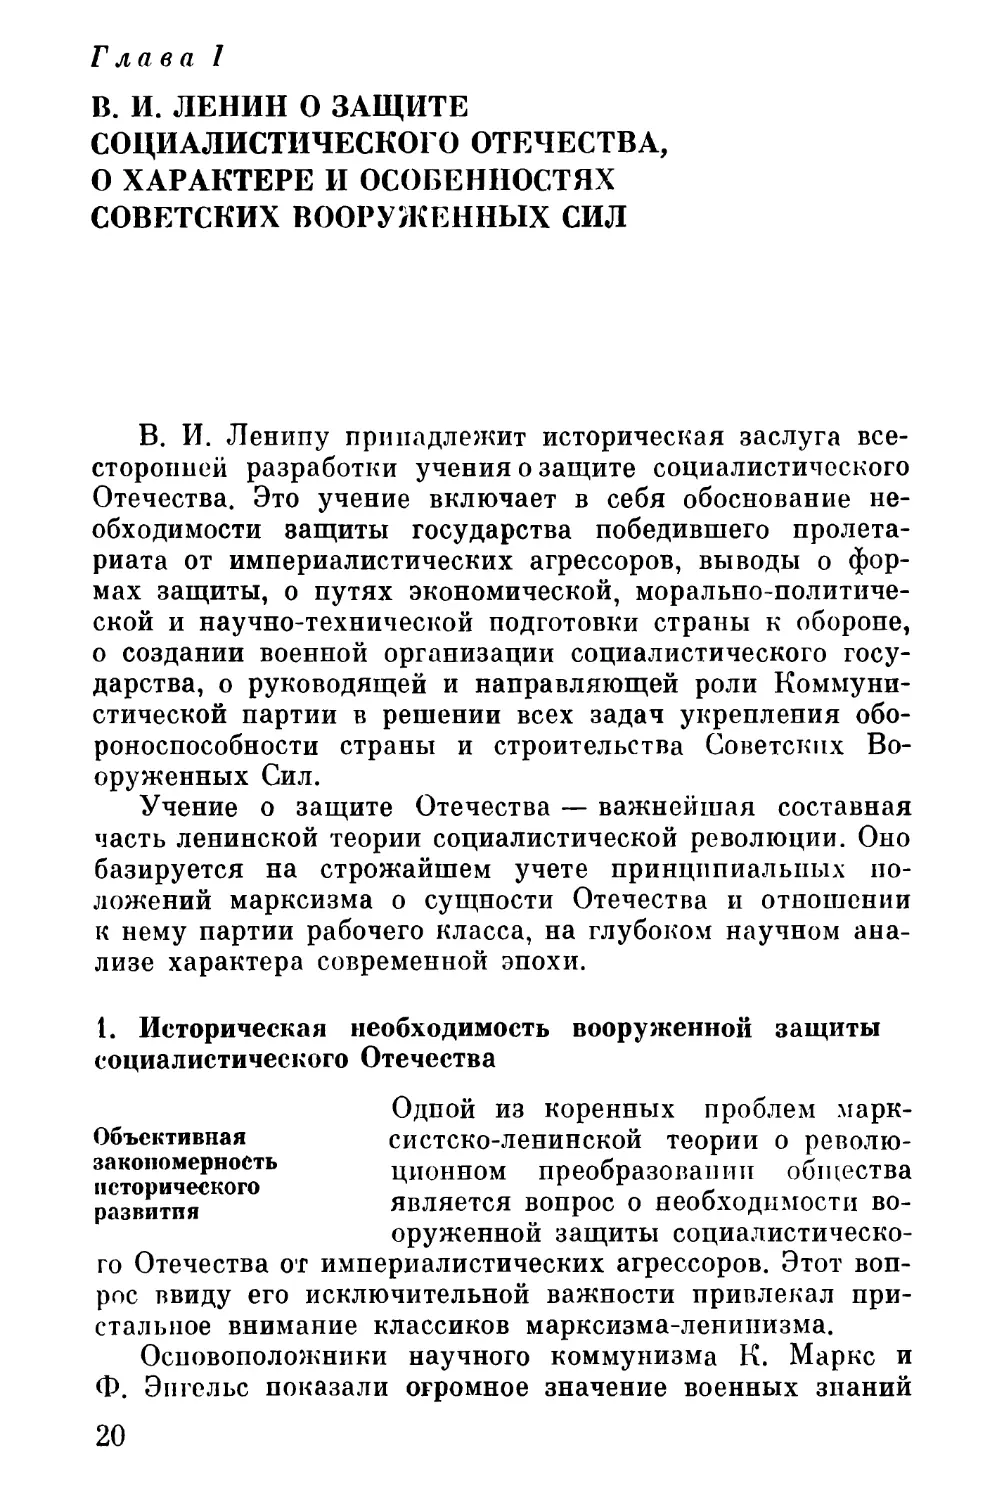 Глава I. В. И. Ленин о защите социалистического Отечества, о характере и особенностях Советских Вооруженных Сил